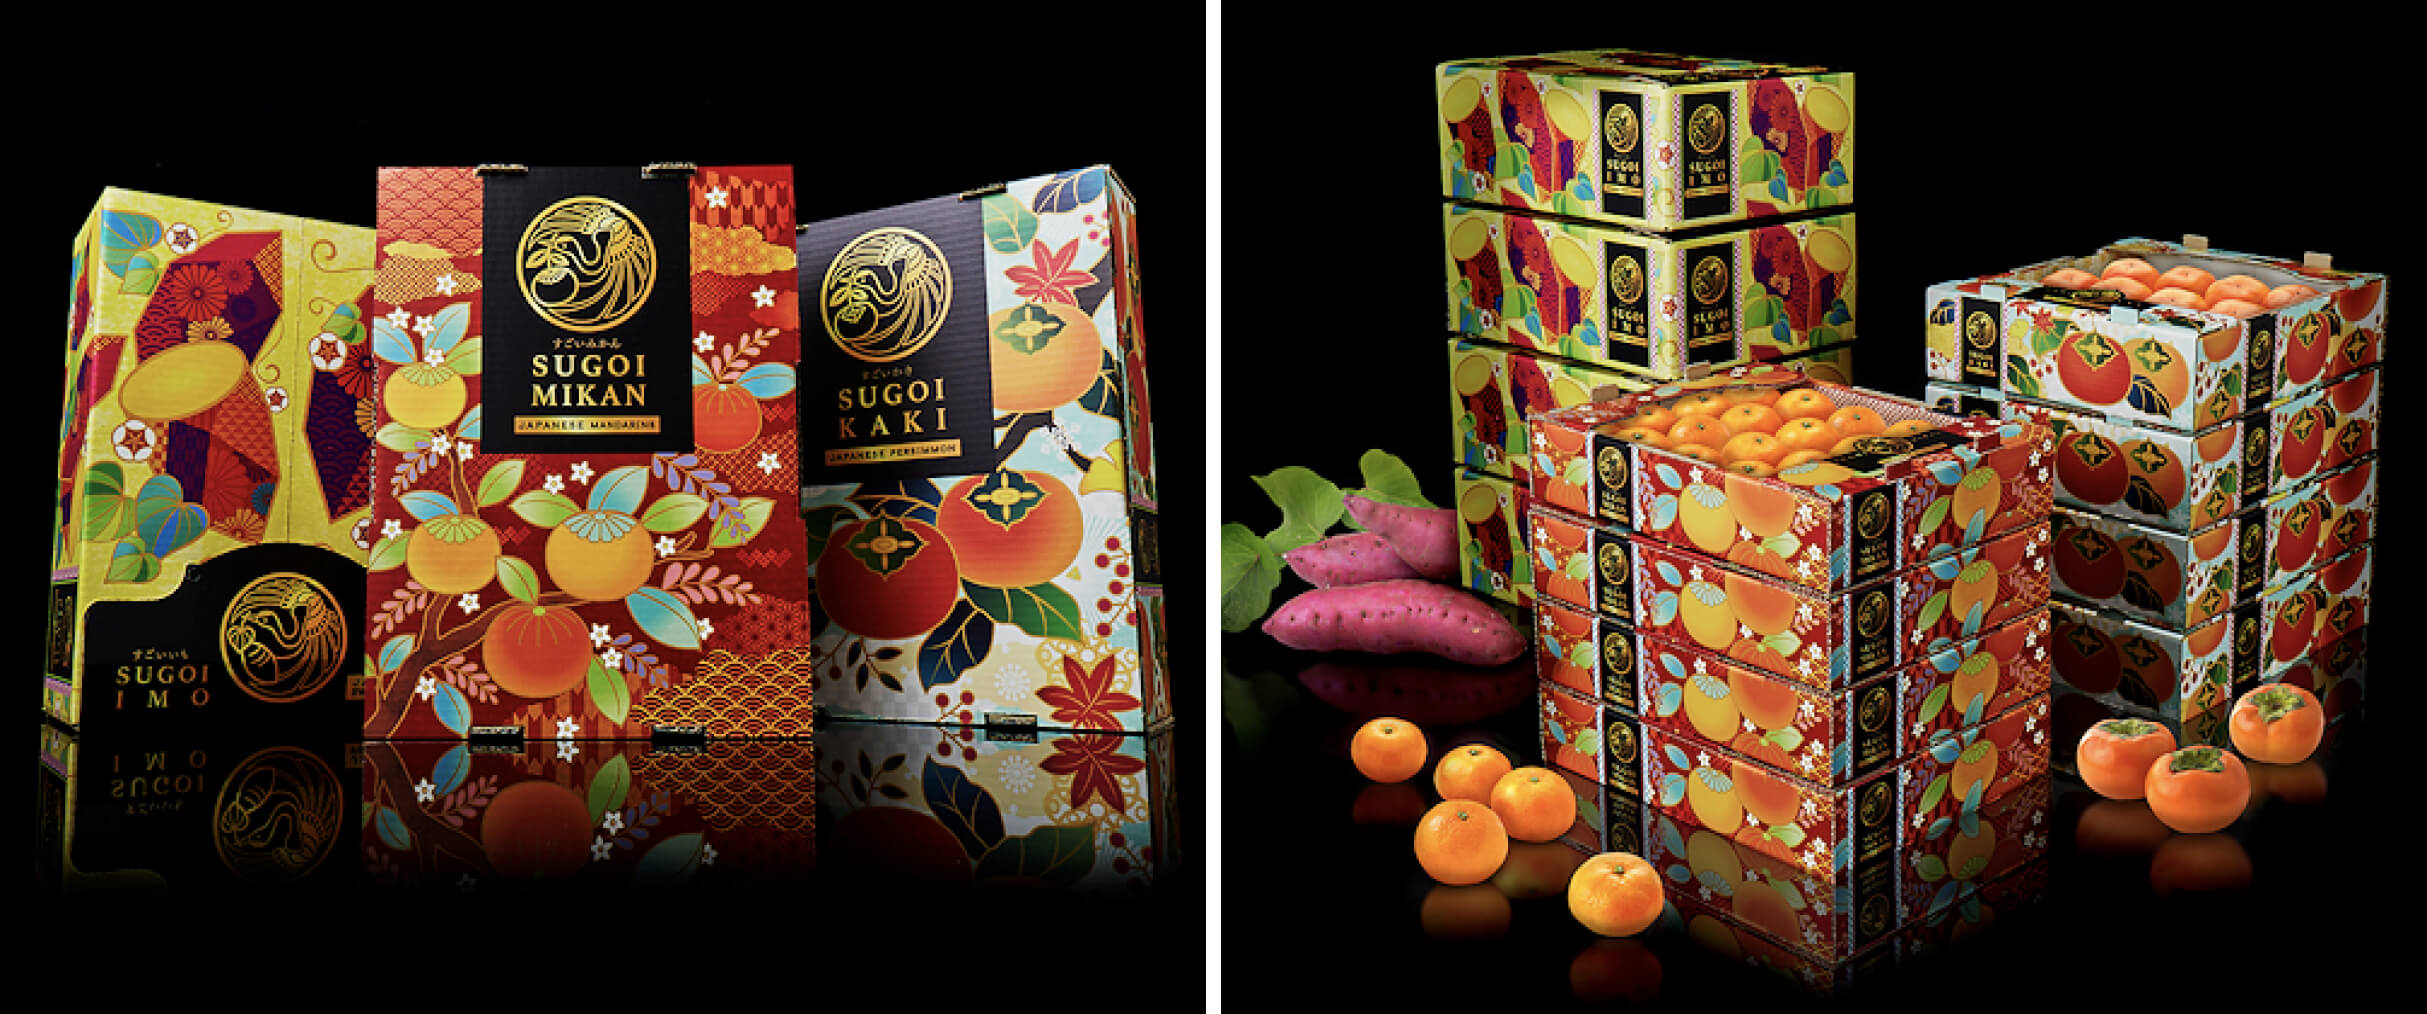 高品質かつリーズナブルな日本の青果物を海外へ。